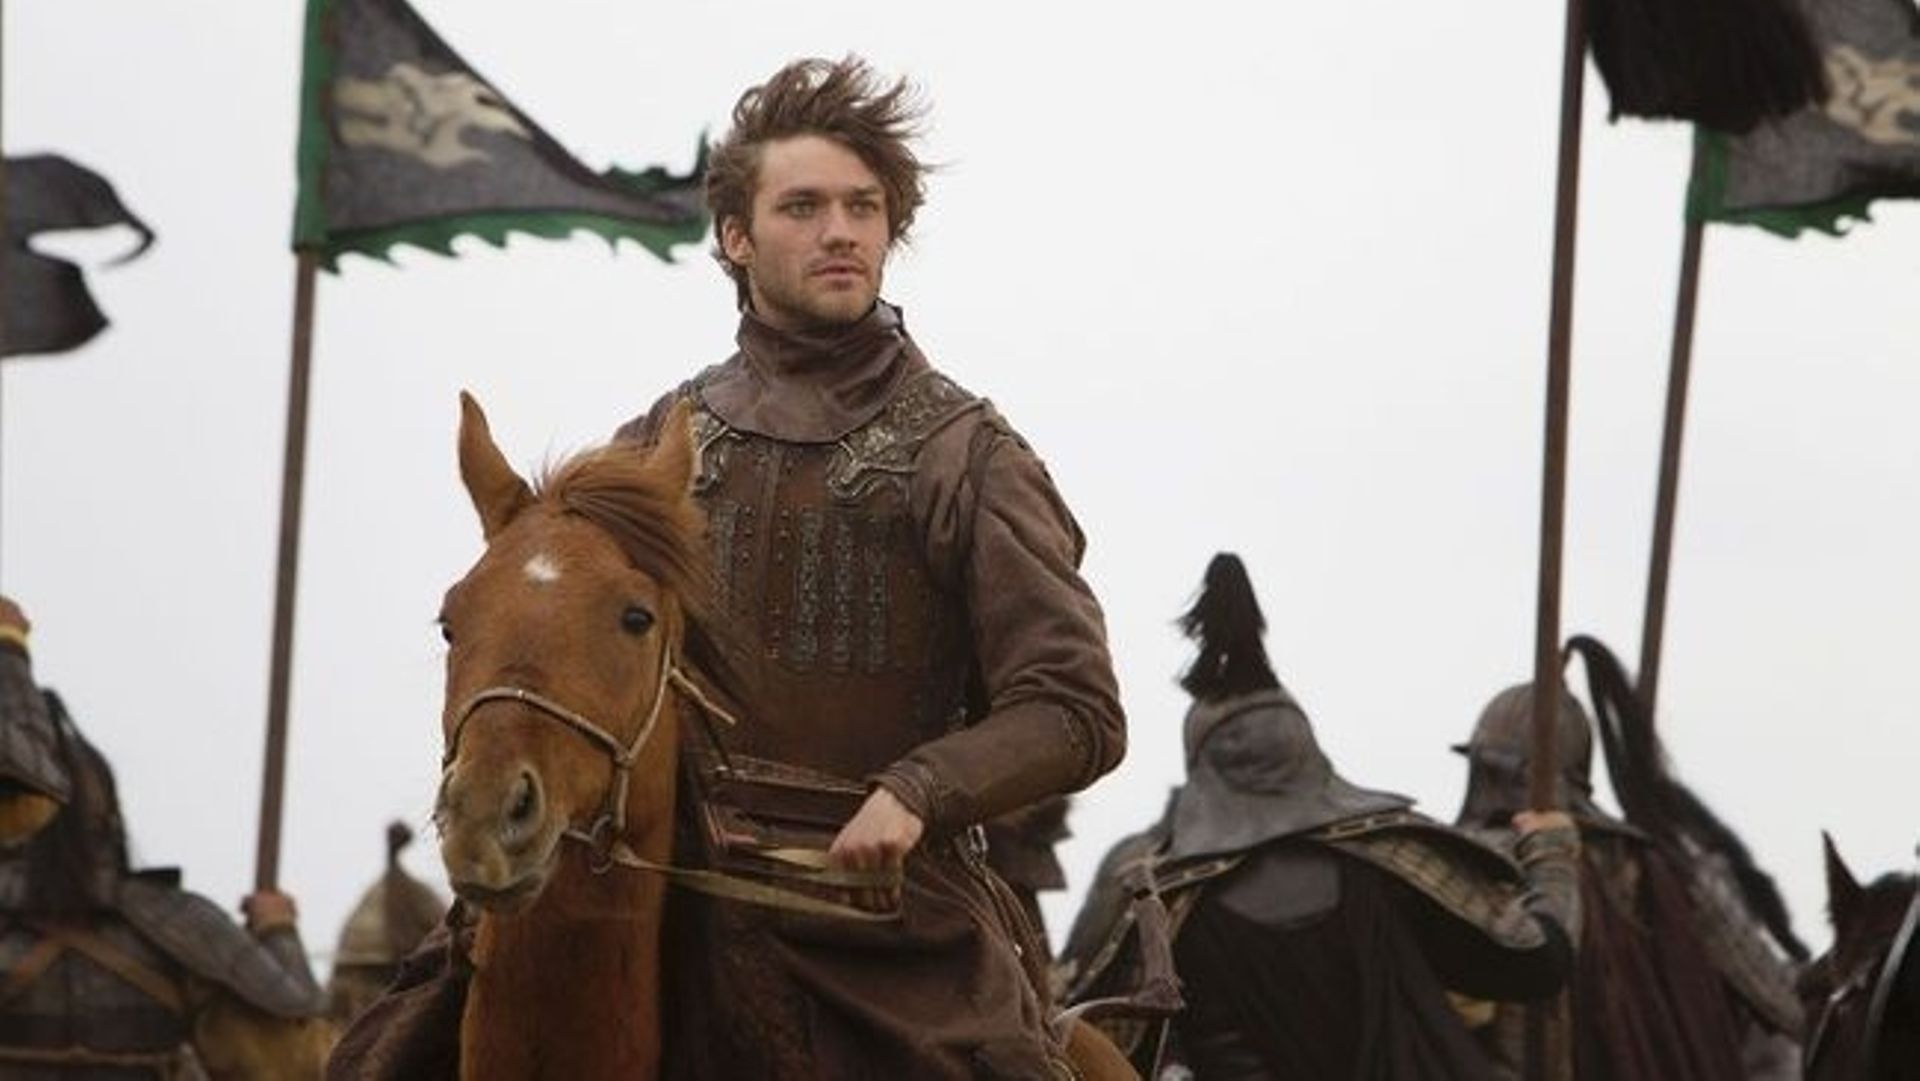 Le périple de "Marco Polo" débute en décembre sur Netflix